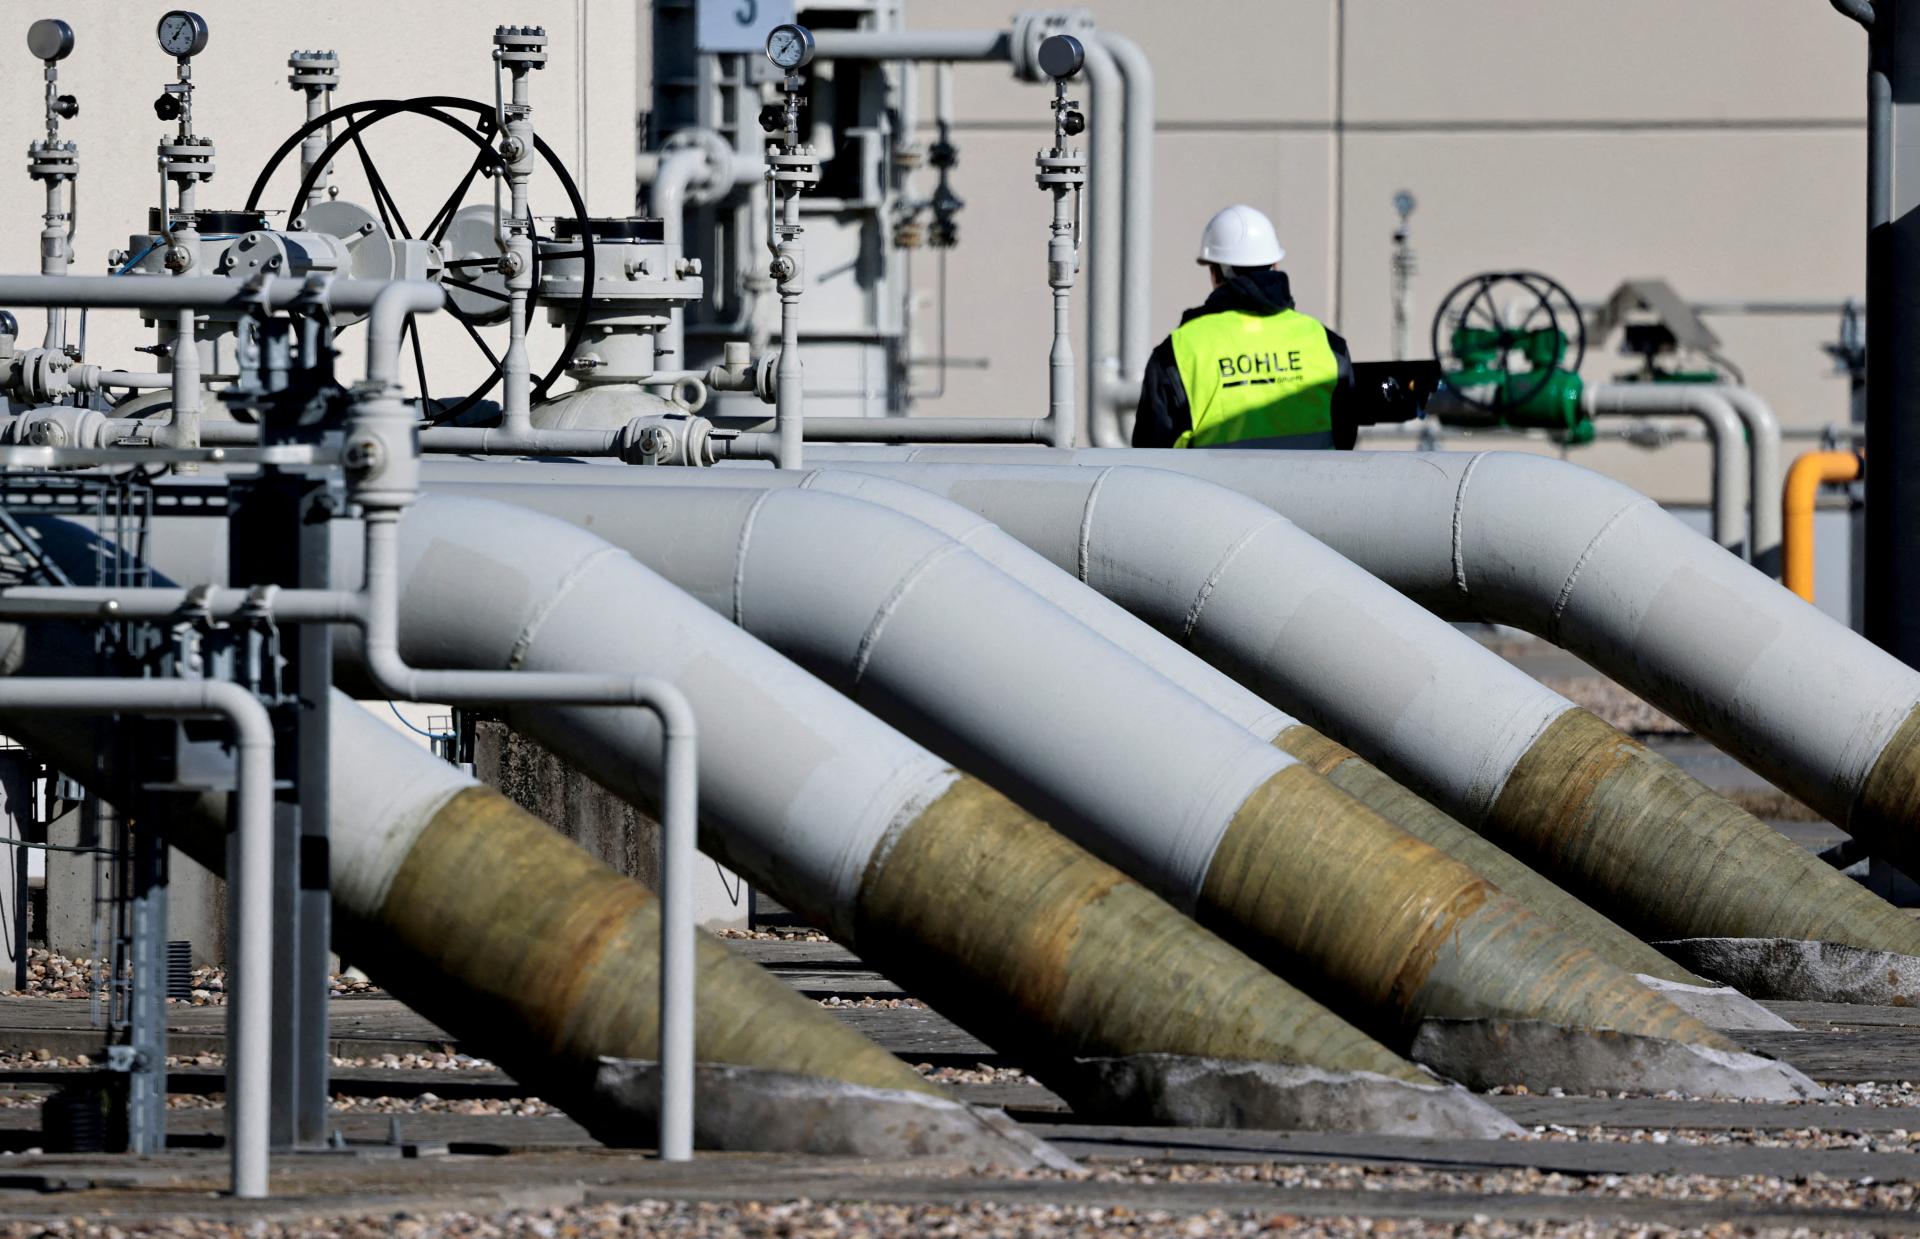 Rusko pripravuje ďalší plynovod do Číny. Mongolsku bude dodávať ropné produkty